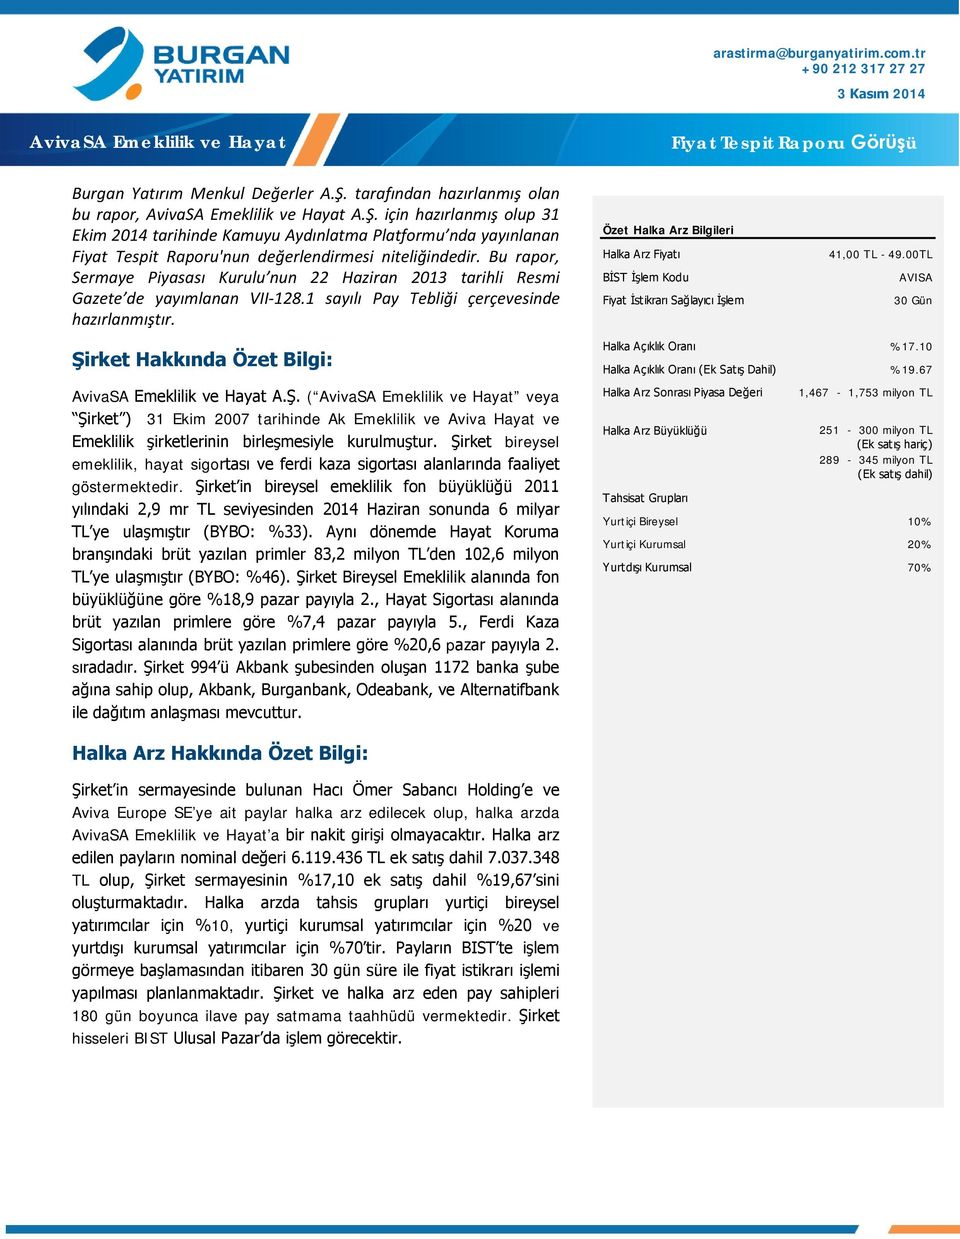 Bu rapor, Sermaye Piyasası Kurulu nun 22 Haziran 2013 tarihli Resmi Gazete de yayımlanan VII-128.1 sayılı Pay Tebliği çerçevesinde hazırlanmıştır.